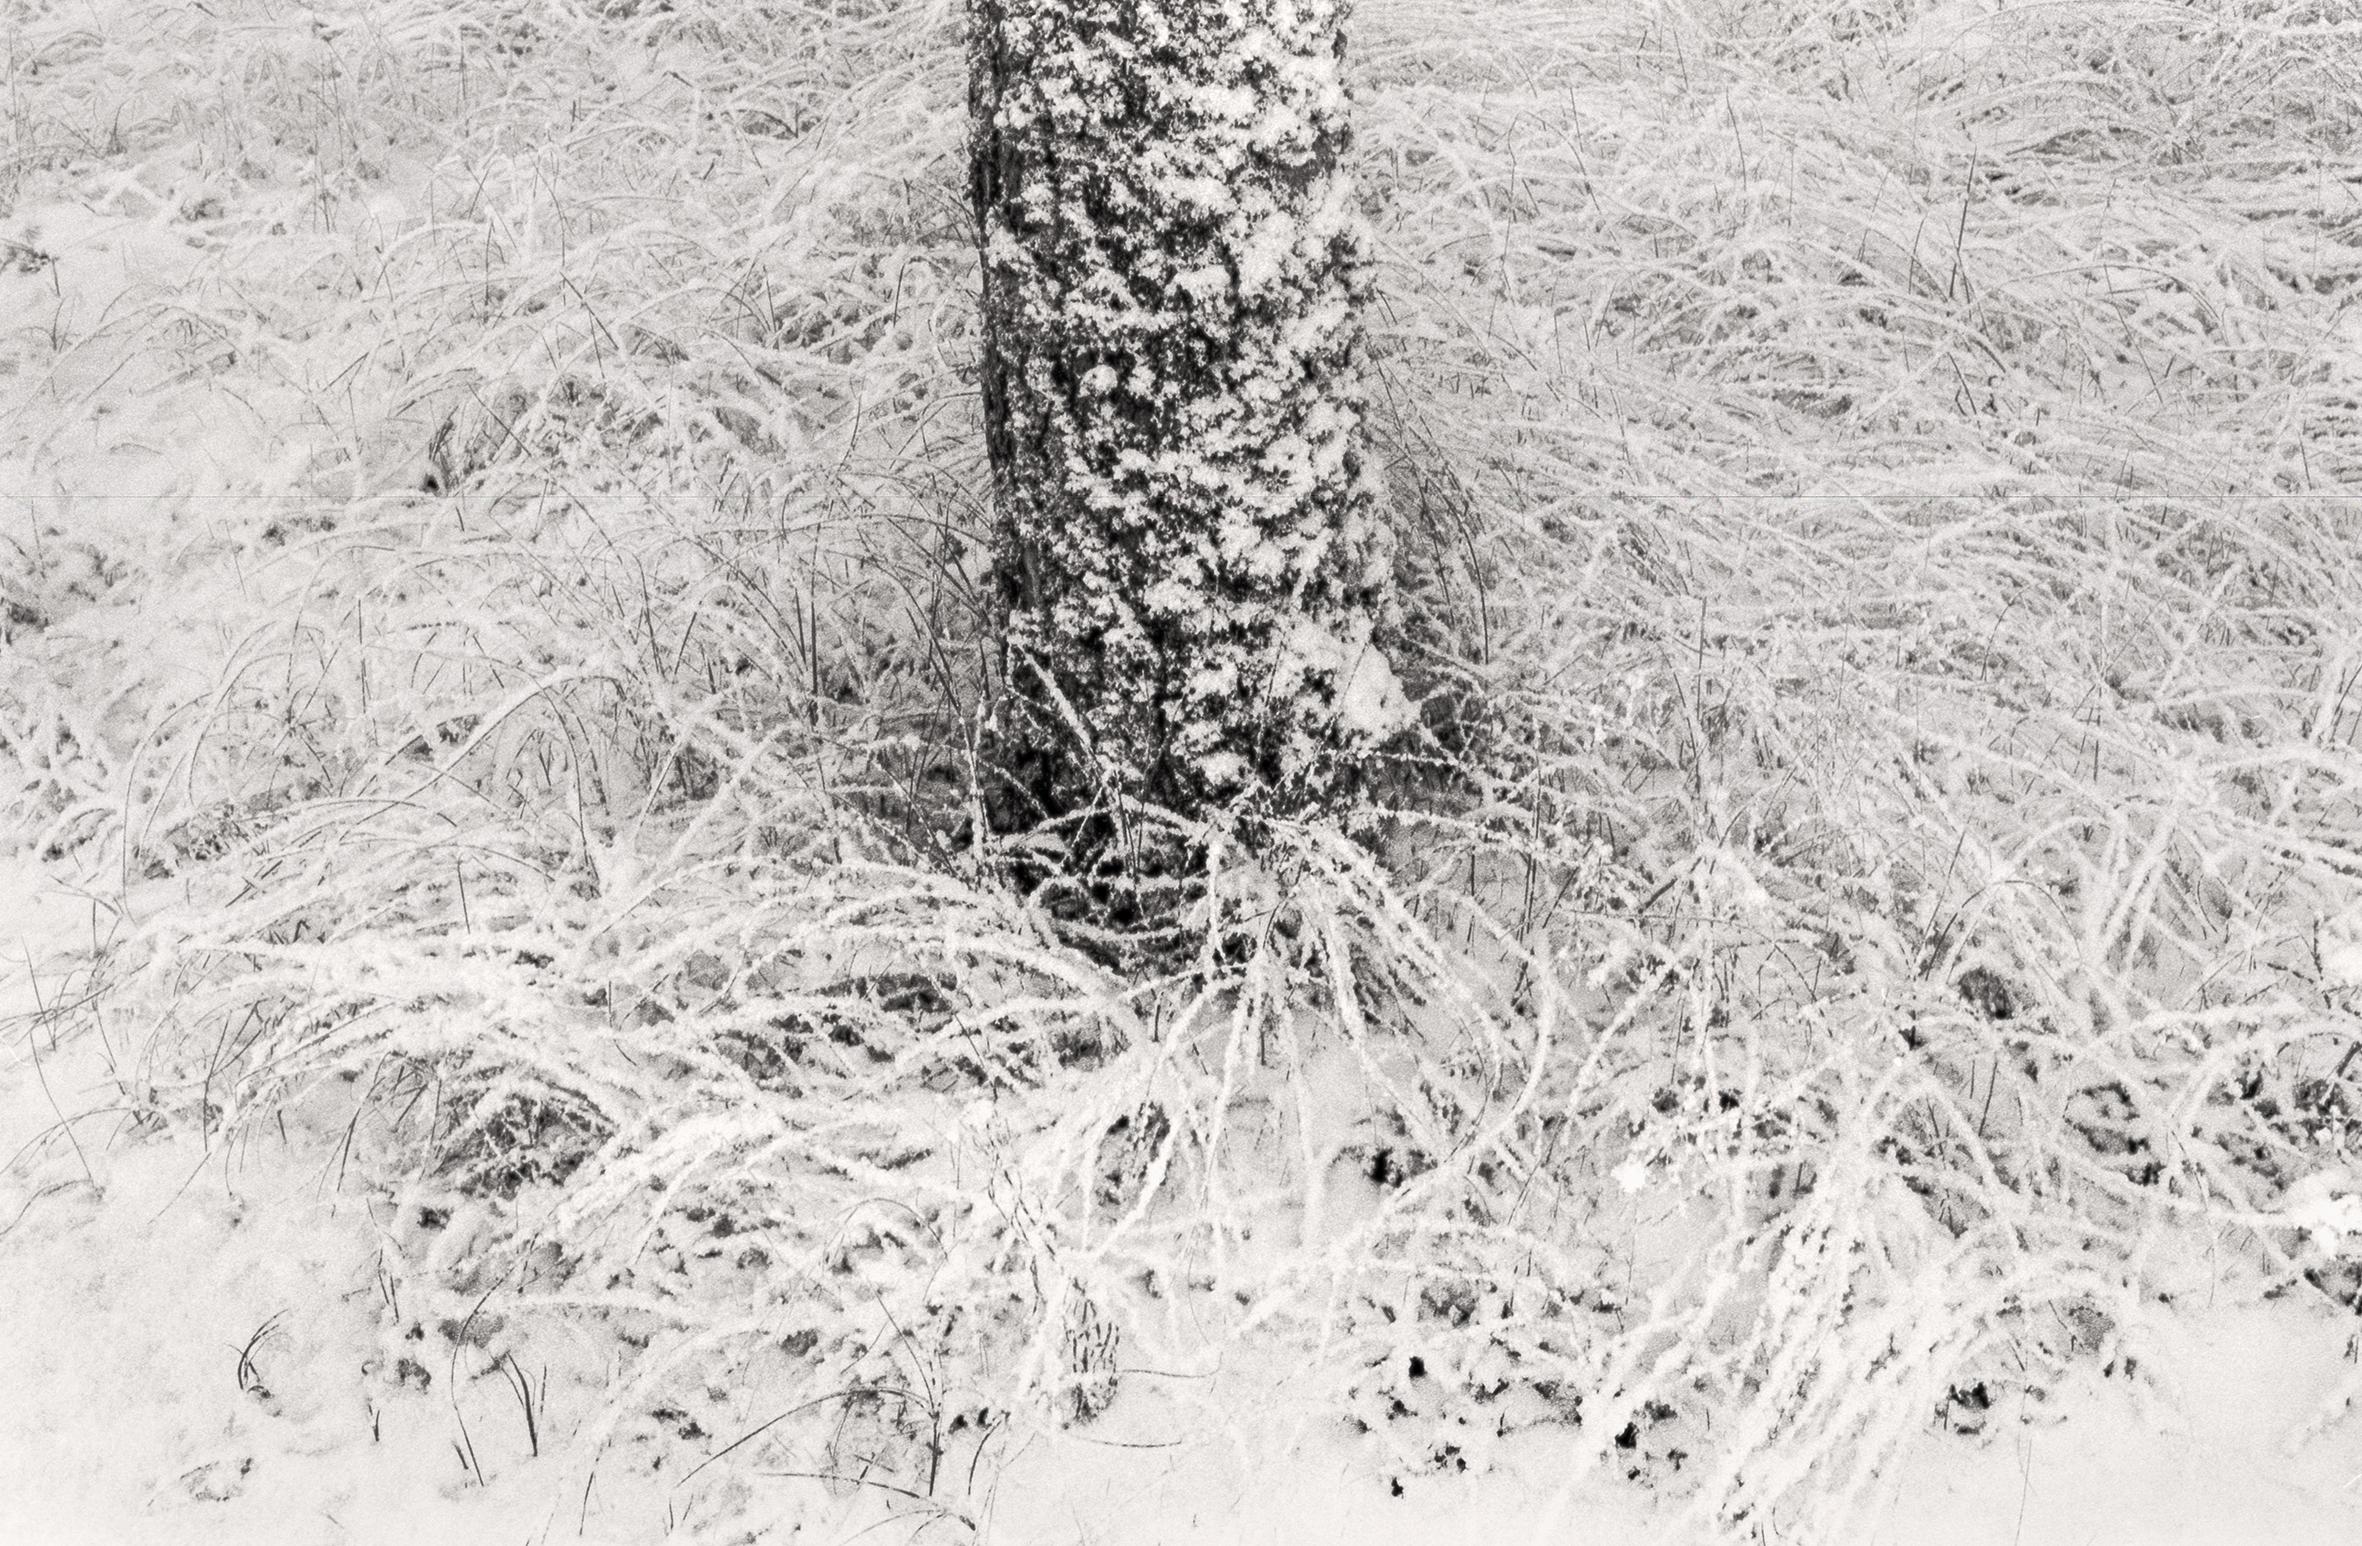 Ugne Pouwell Landscape Photograph – „Baltic Freeze #2“ – Schwarz-Weiß- analoge Landschaftsfotografie in Schwarz-Weiß 100 x 65 cm